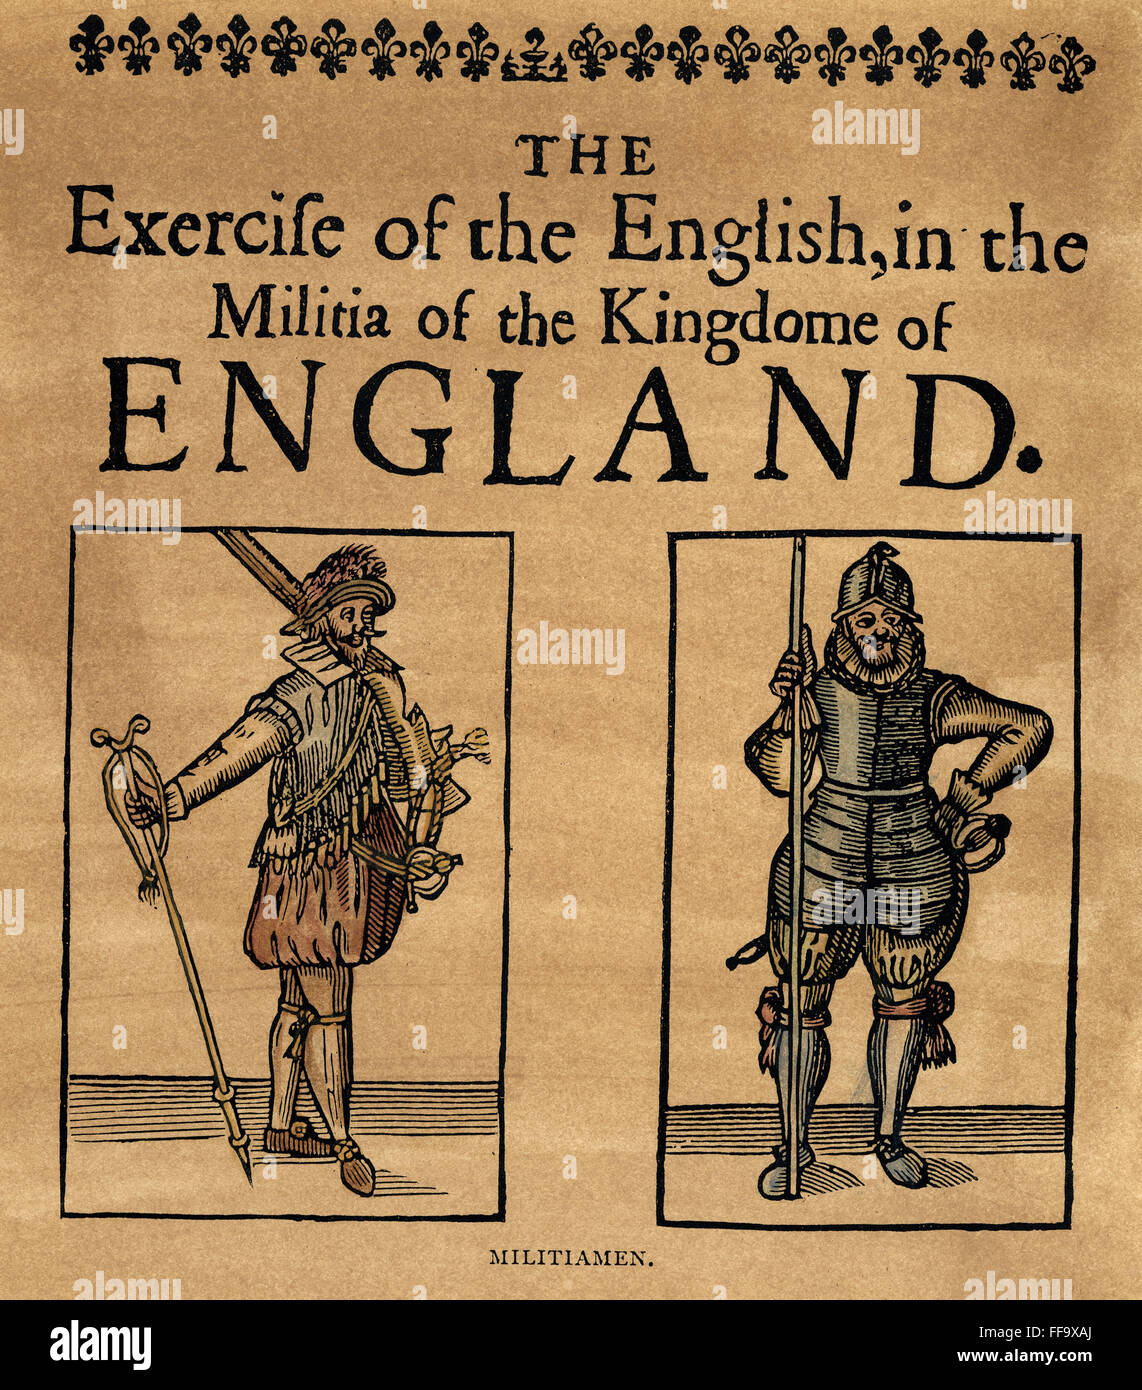 Los milicianos, c1642. /NA Cavalier (izquierda) y una cabeza redonda (derecha), desde la época del rey Carlos I de Inglaterra. Título de la página del sitio "El ejercicio de los ingleses en la Milicia de la Unido de Inglaterra', C1642. Foto de stock